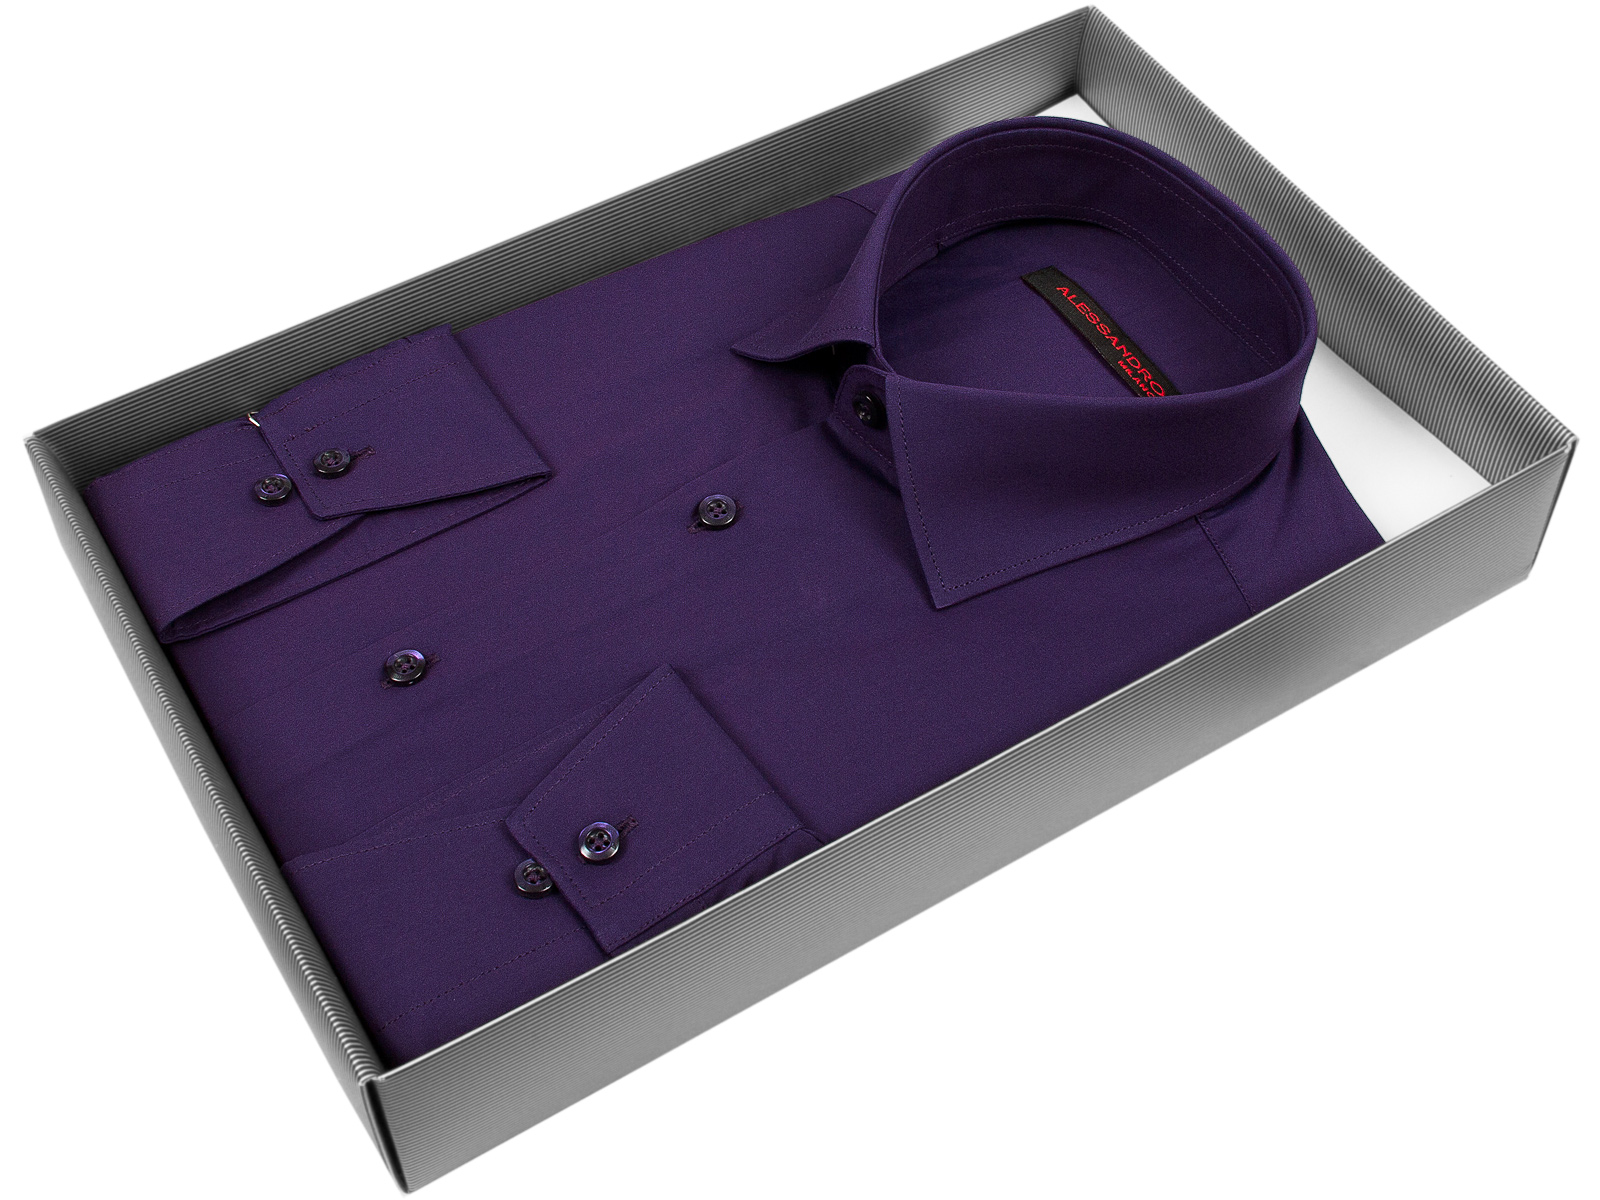 Мужская рубашка Alessandro Milano Limited Edition приталенный цвет фиолетовый однотонный купить в Москве недорого